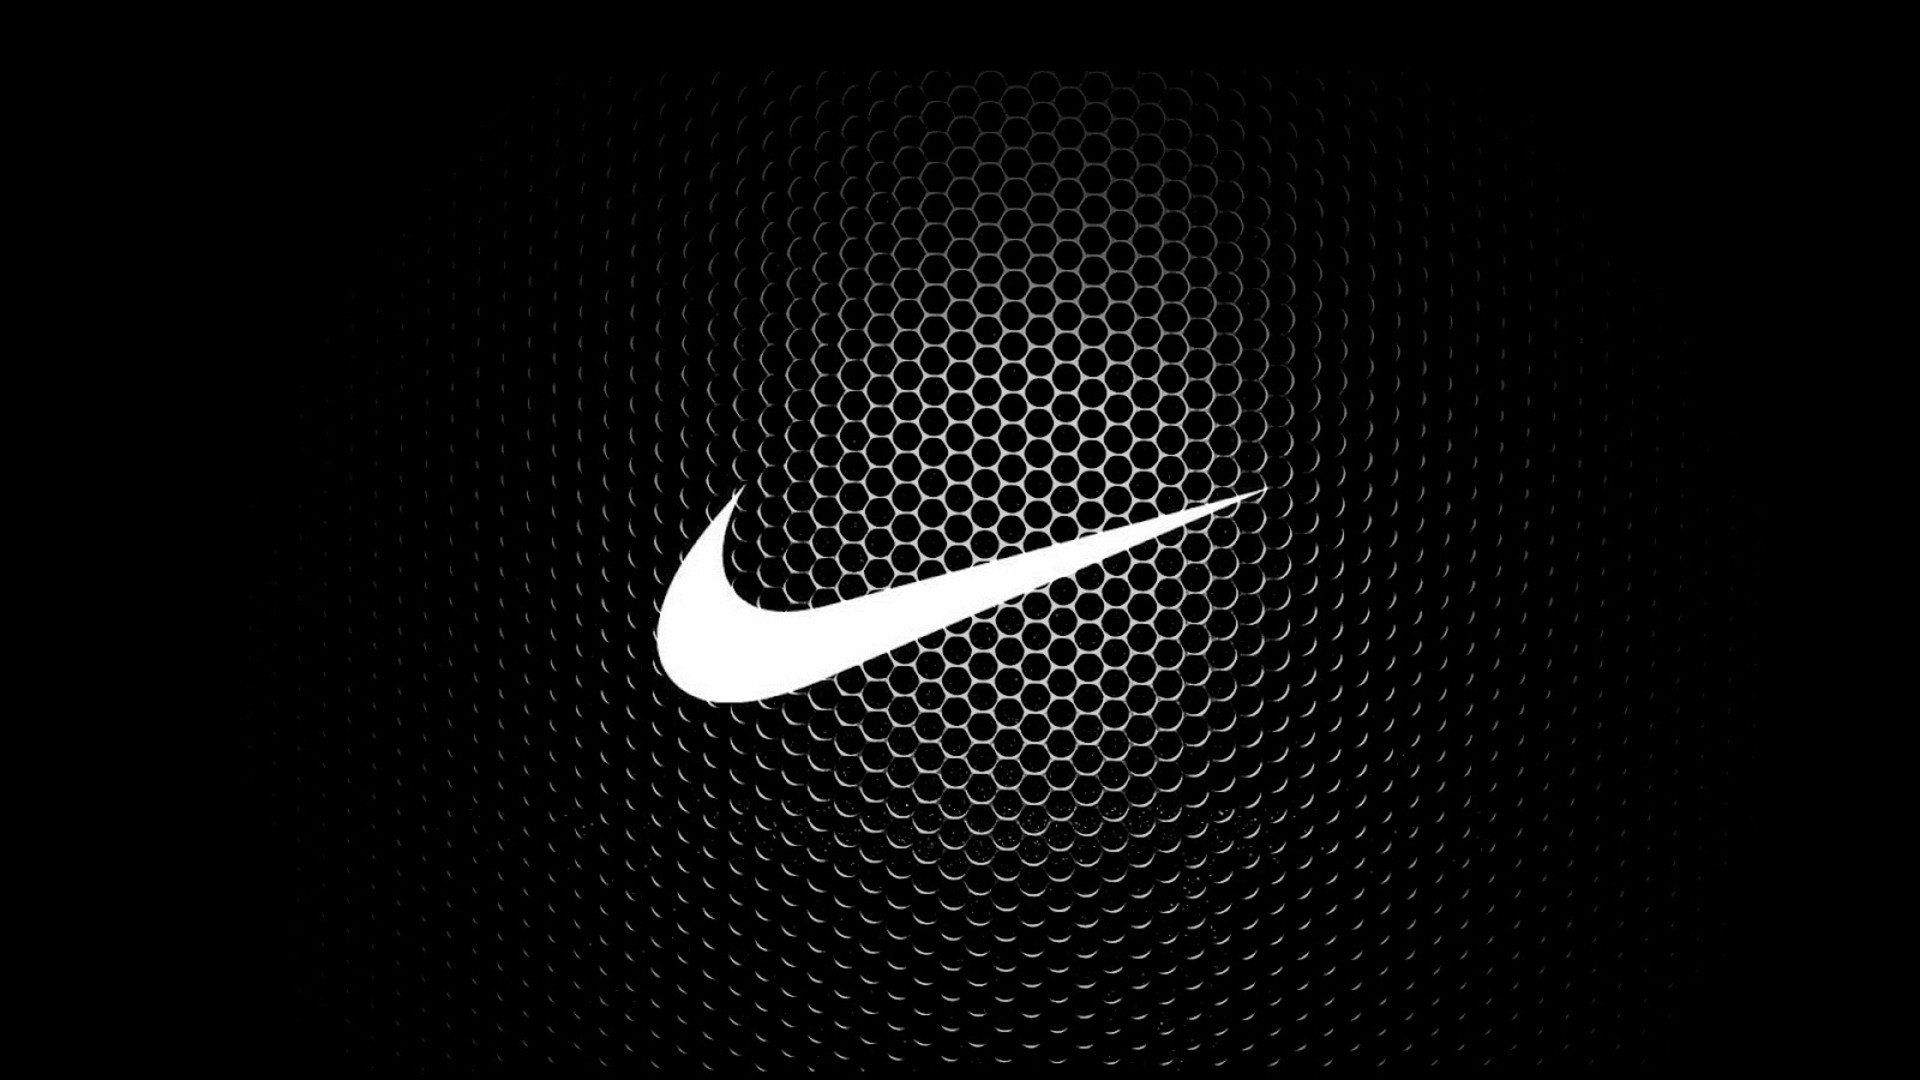 Cool Nike Logo Wallpapers